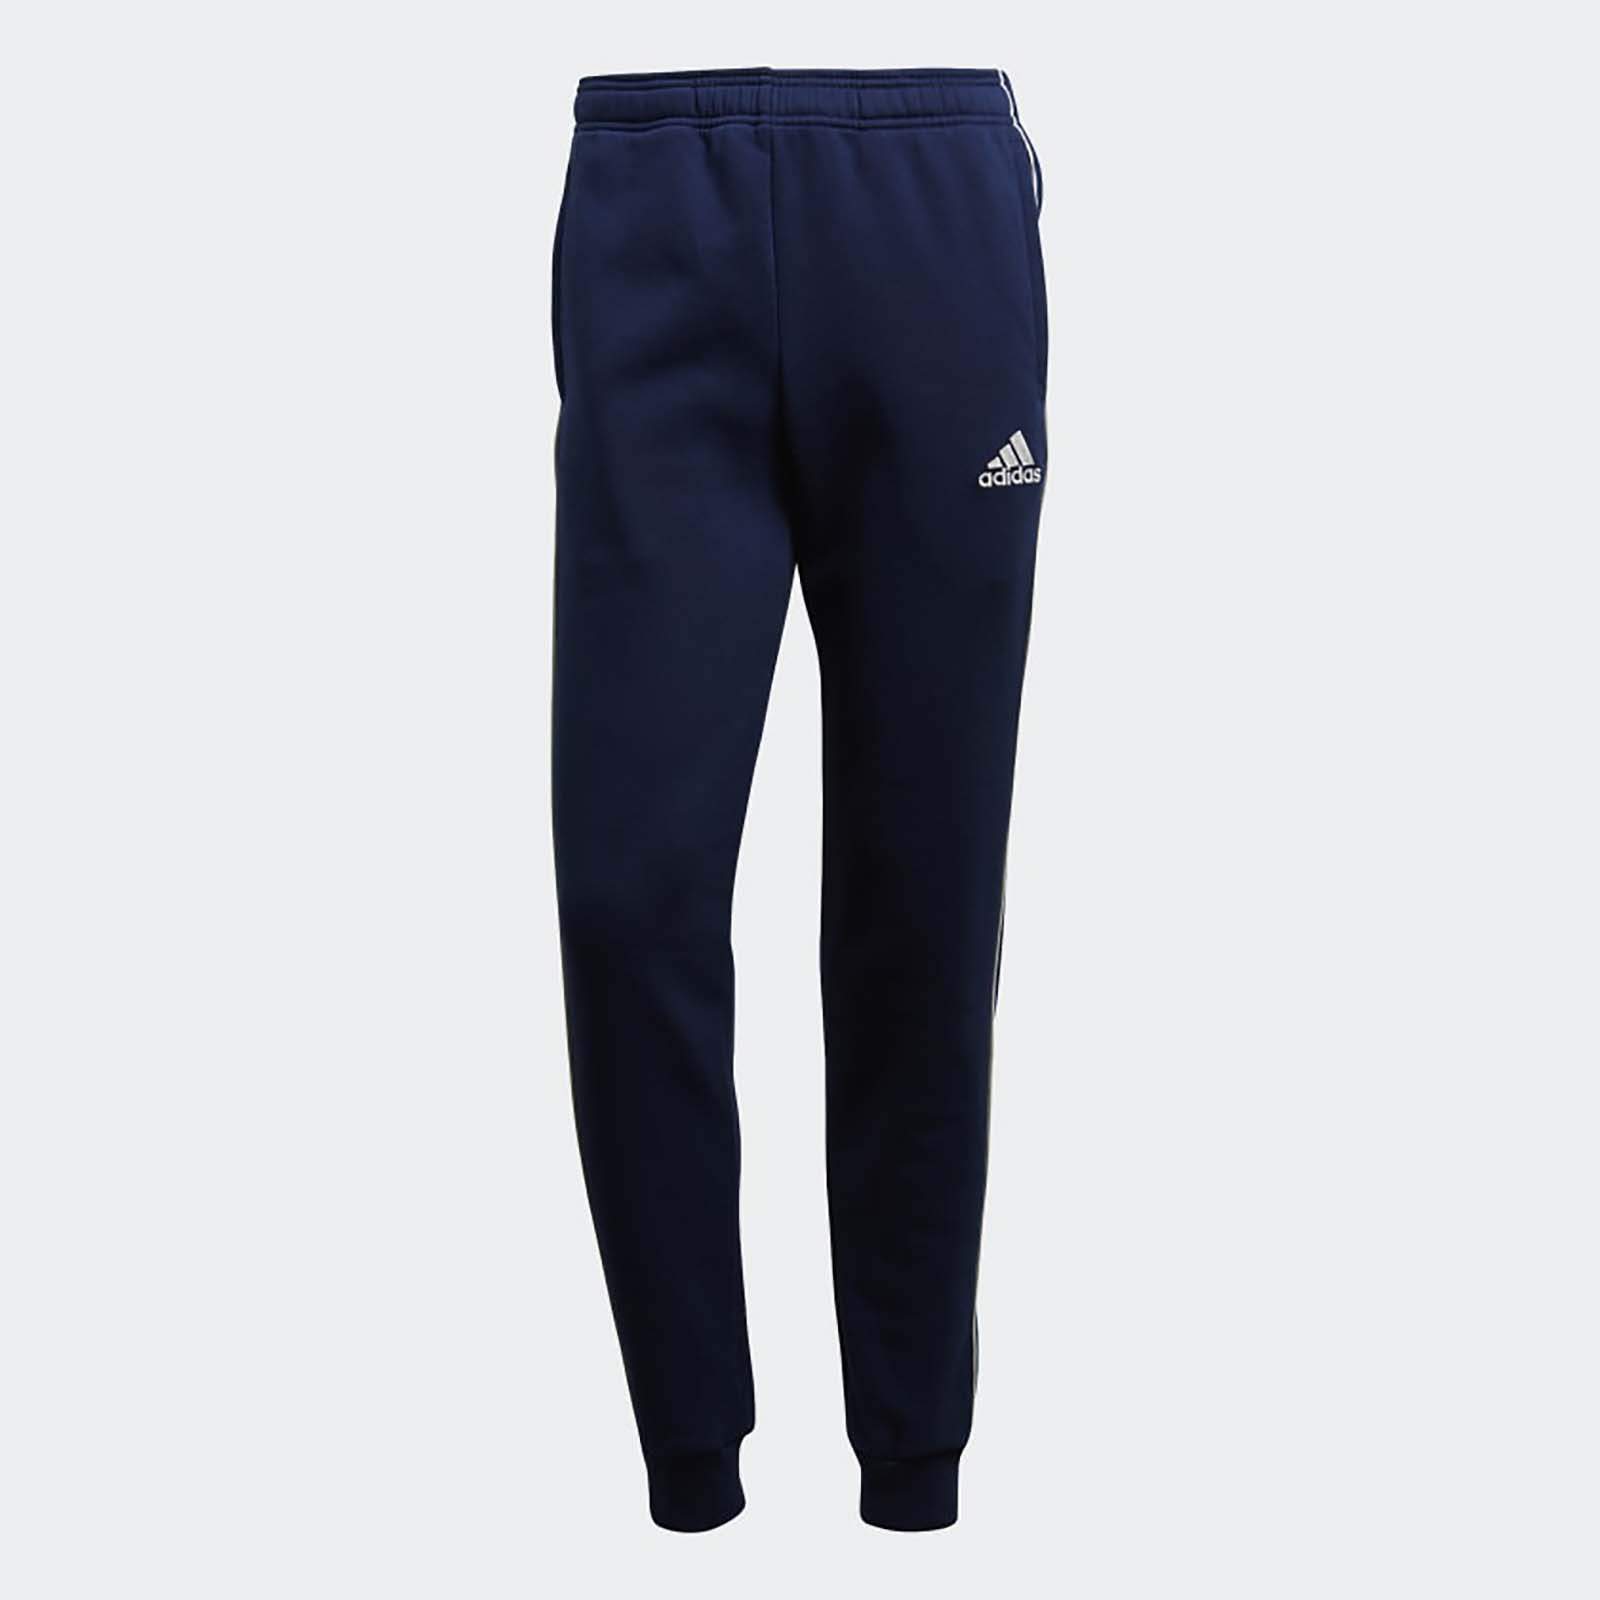 Спортивные брюки мужские Adidas CORE18 SW PNT синие XL